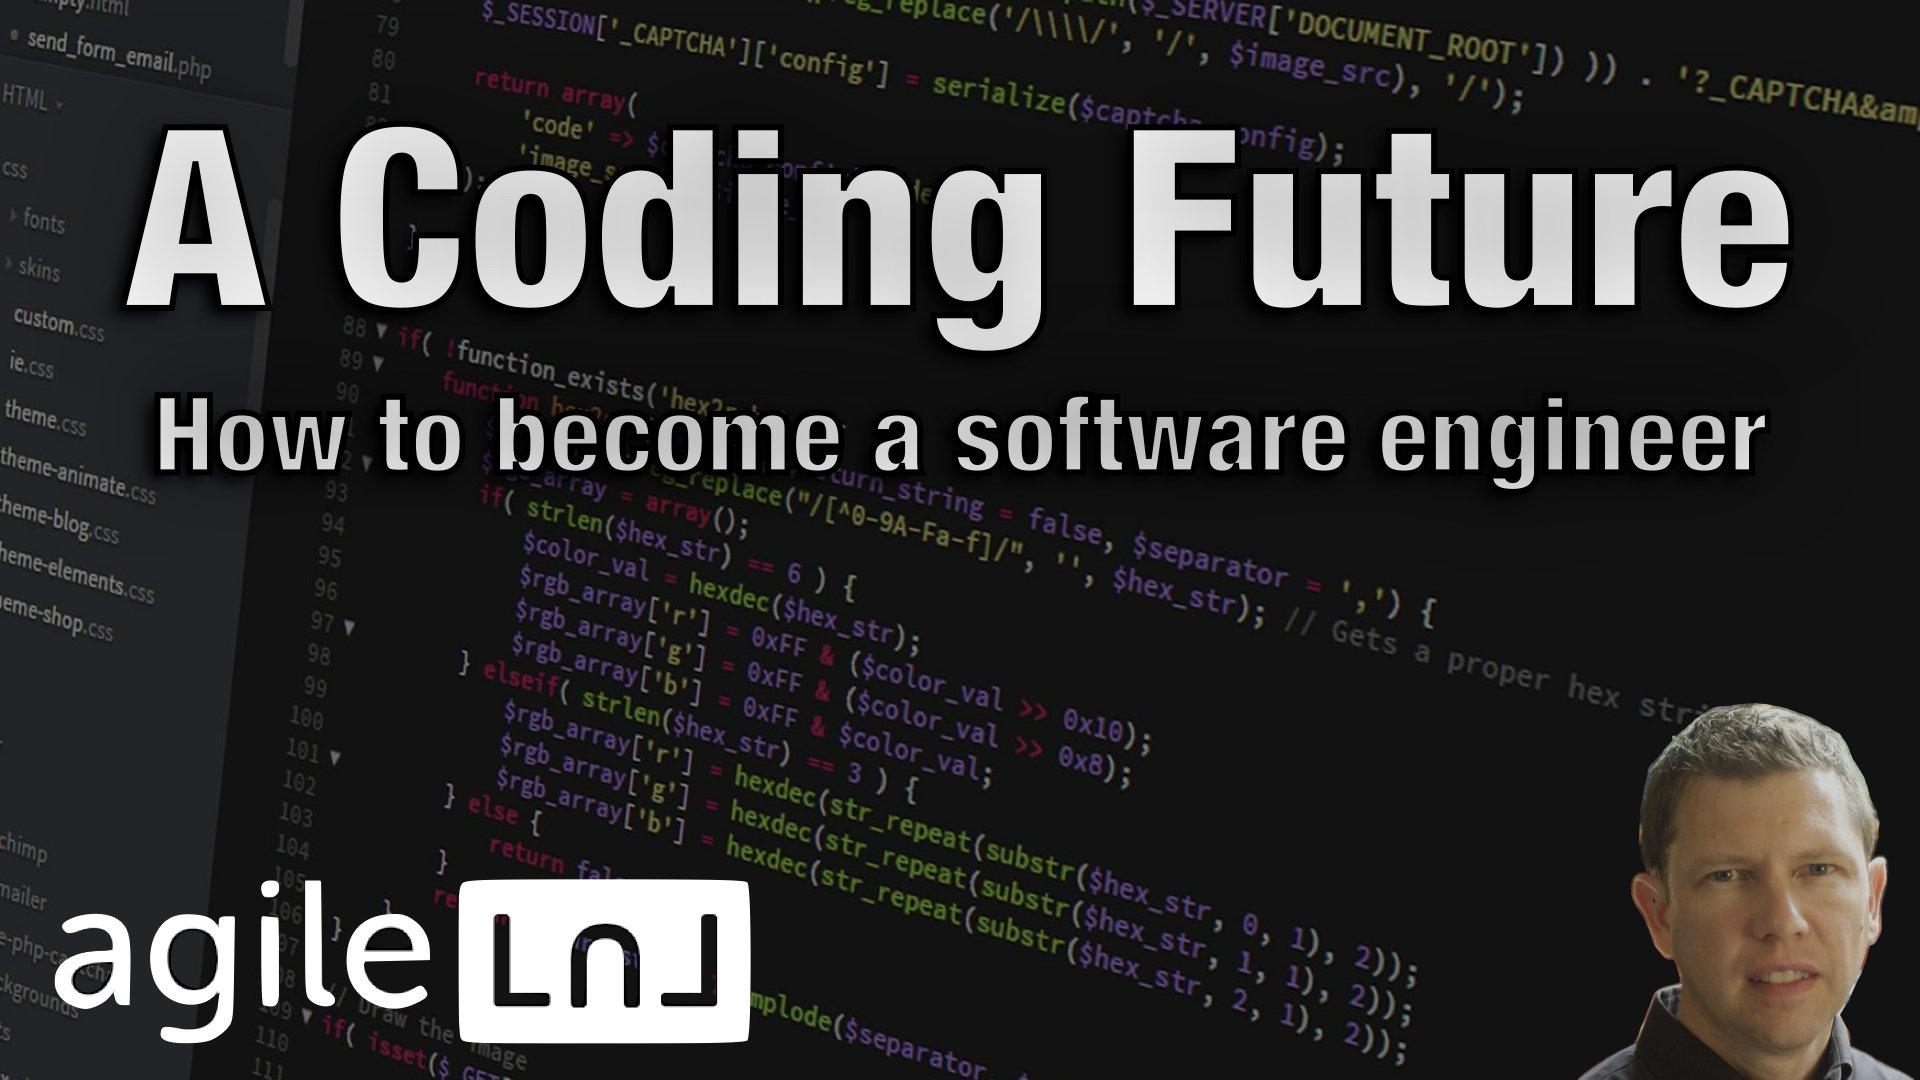 A Coding Future